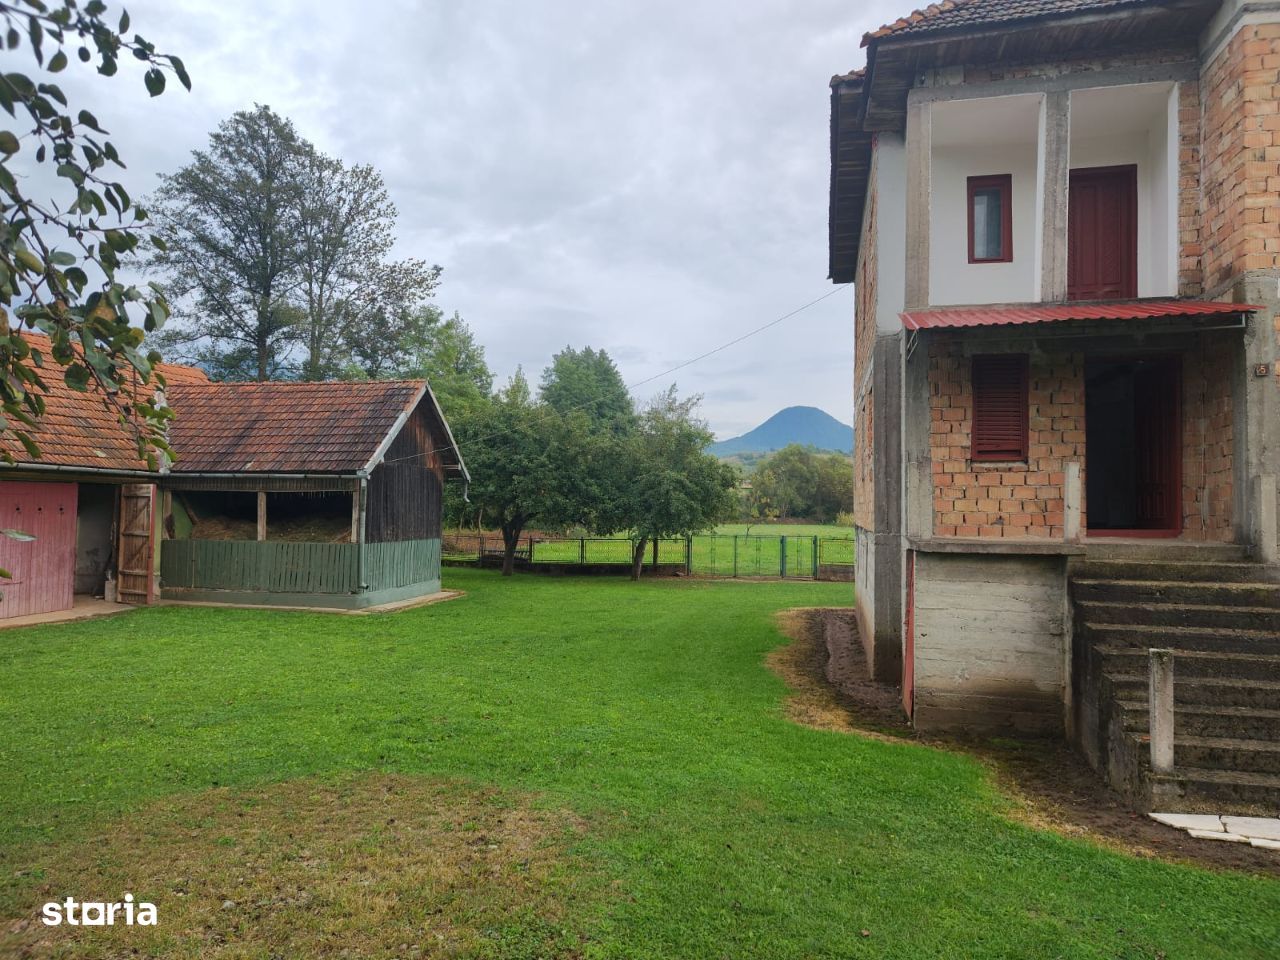 Casa in Hartagani, comuna Baita, teren 1450mp